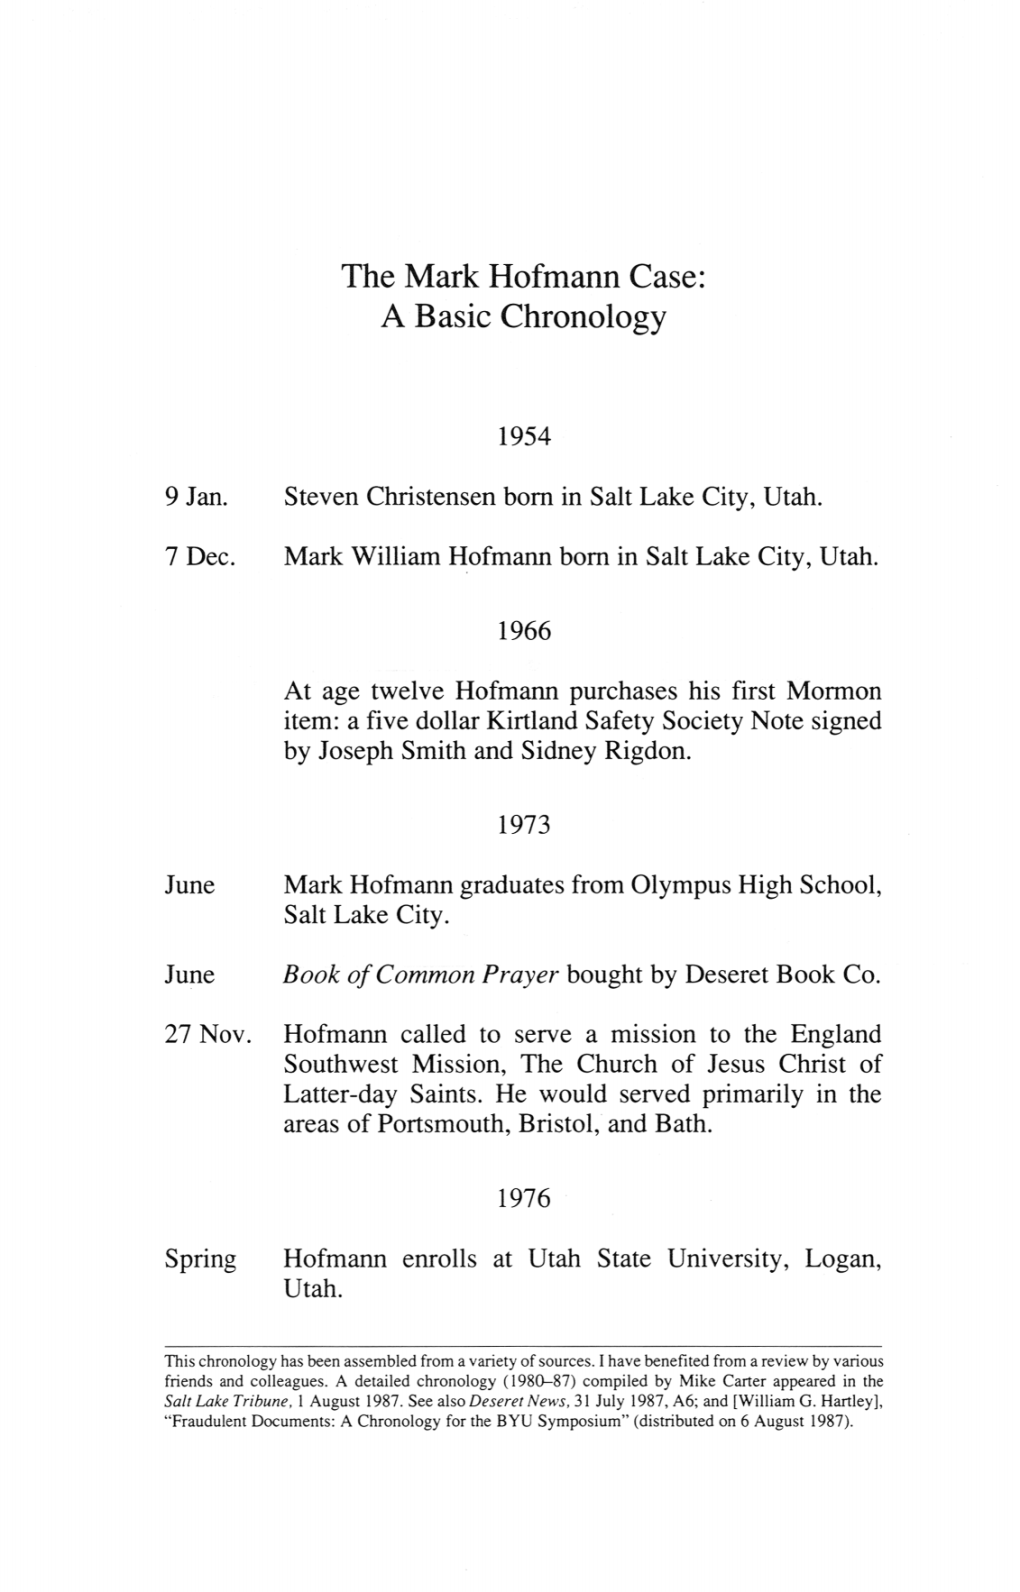 The Mark Hofmann Case a Basic Chronology